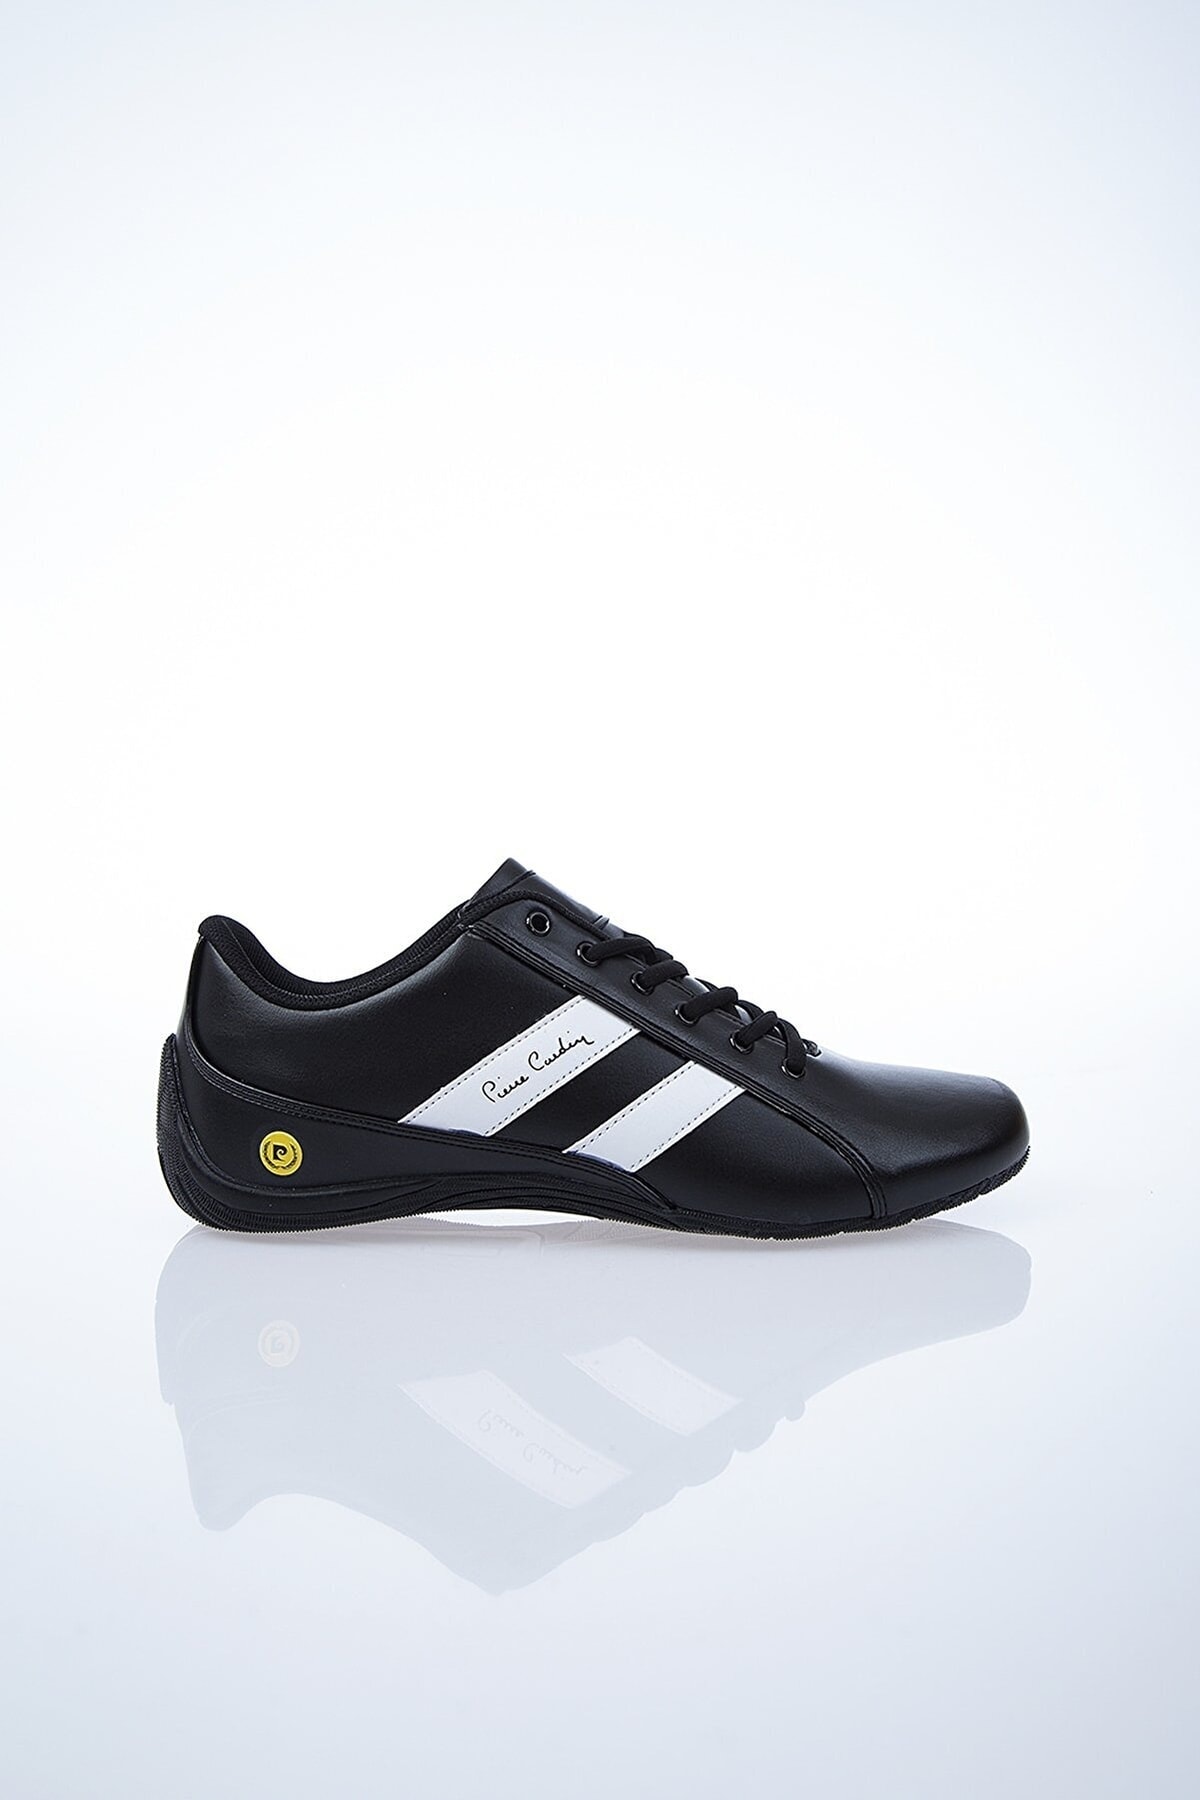 Pierre Cardin Pc-30490 Siyah-beyaz Erkek Yazlık Spor Ayakkabı